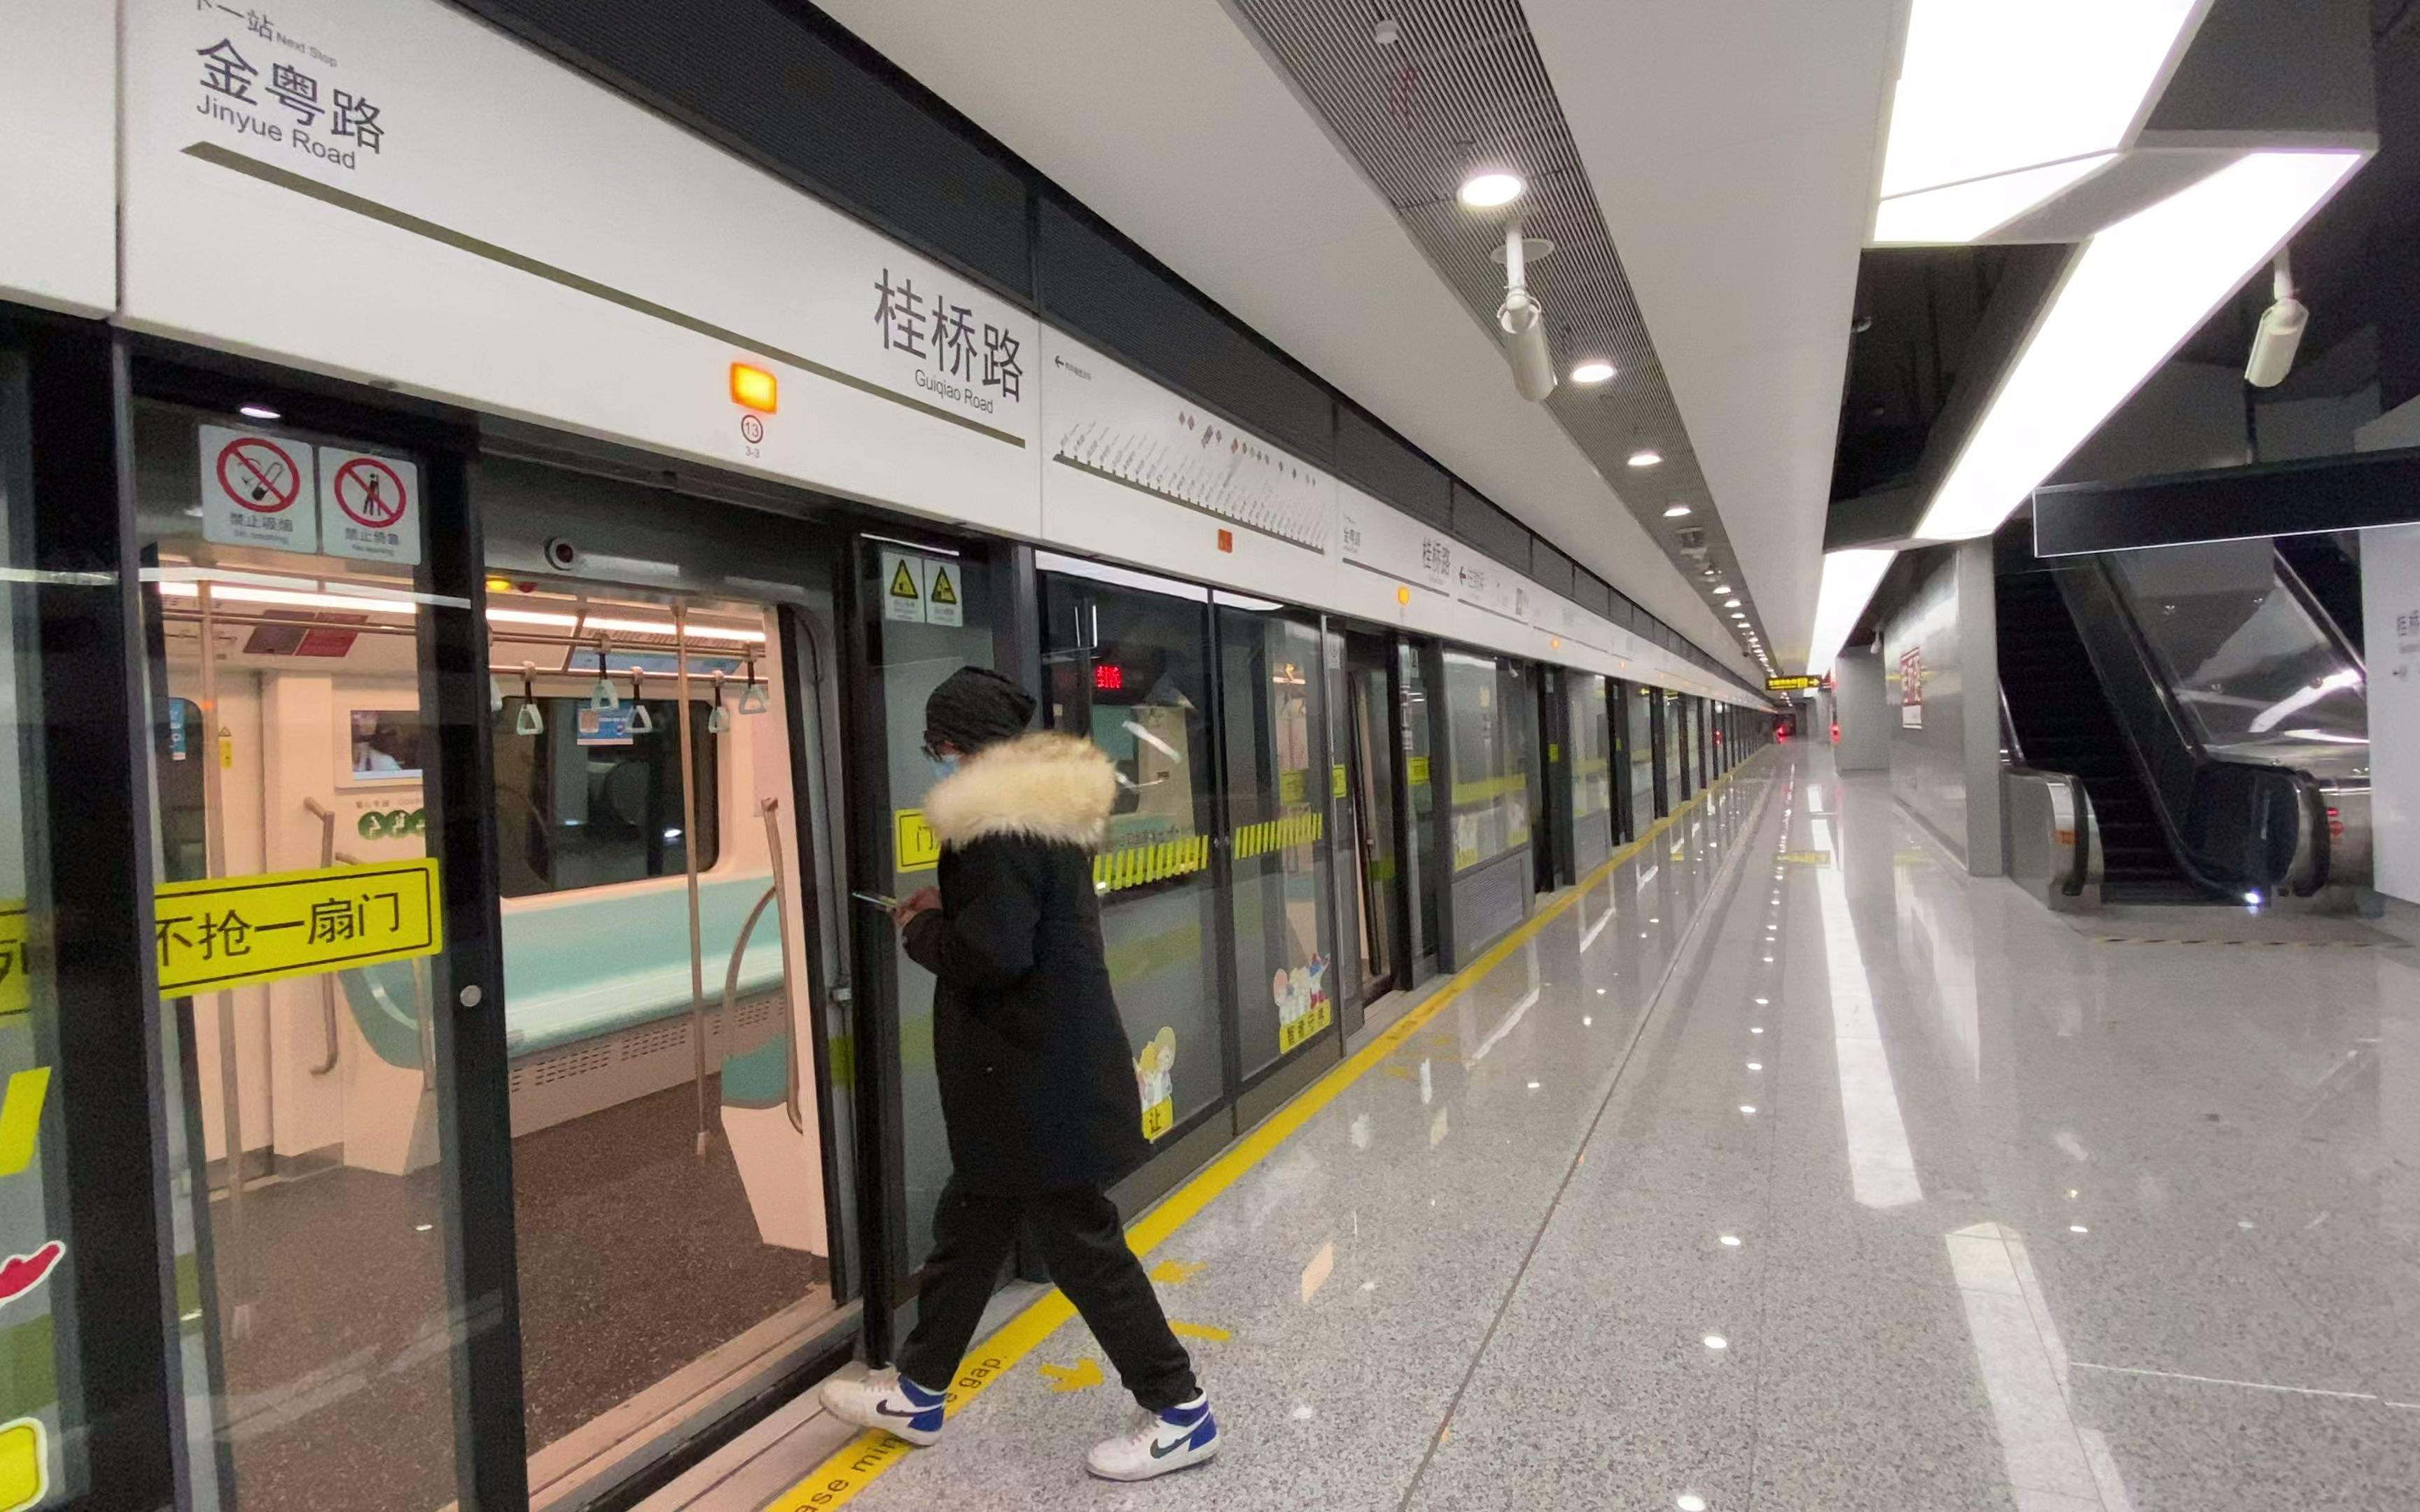 【4k60p】上海地铁14号线新车桂桥路